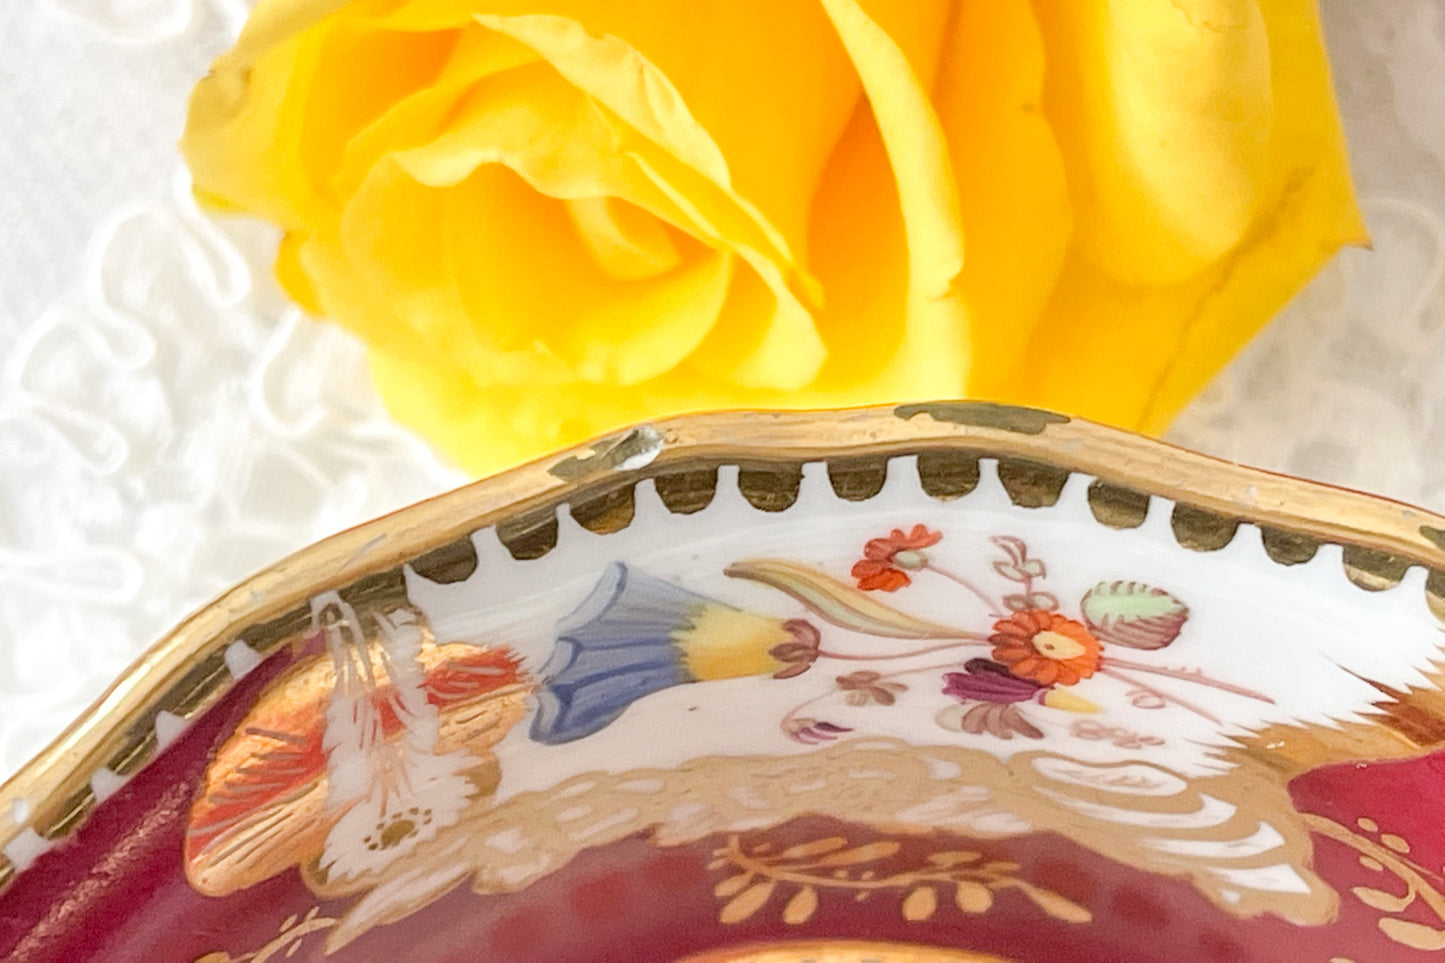 １９世紀のアンティークカップ&ソーサー。マルーンレッドのお色が大変美しいです。ハンドペイントで花々が生き生きと描かれていて、金彩の模様も大変美しいお品です。